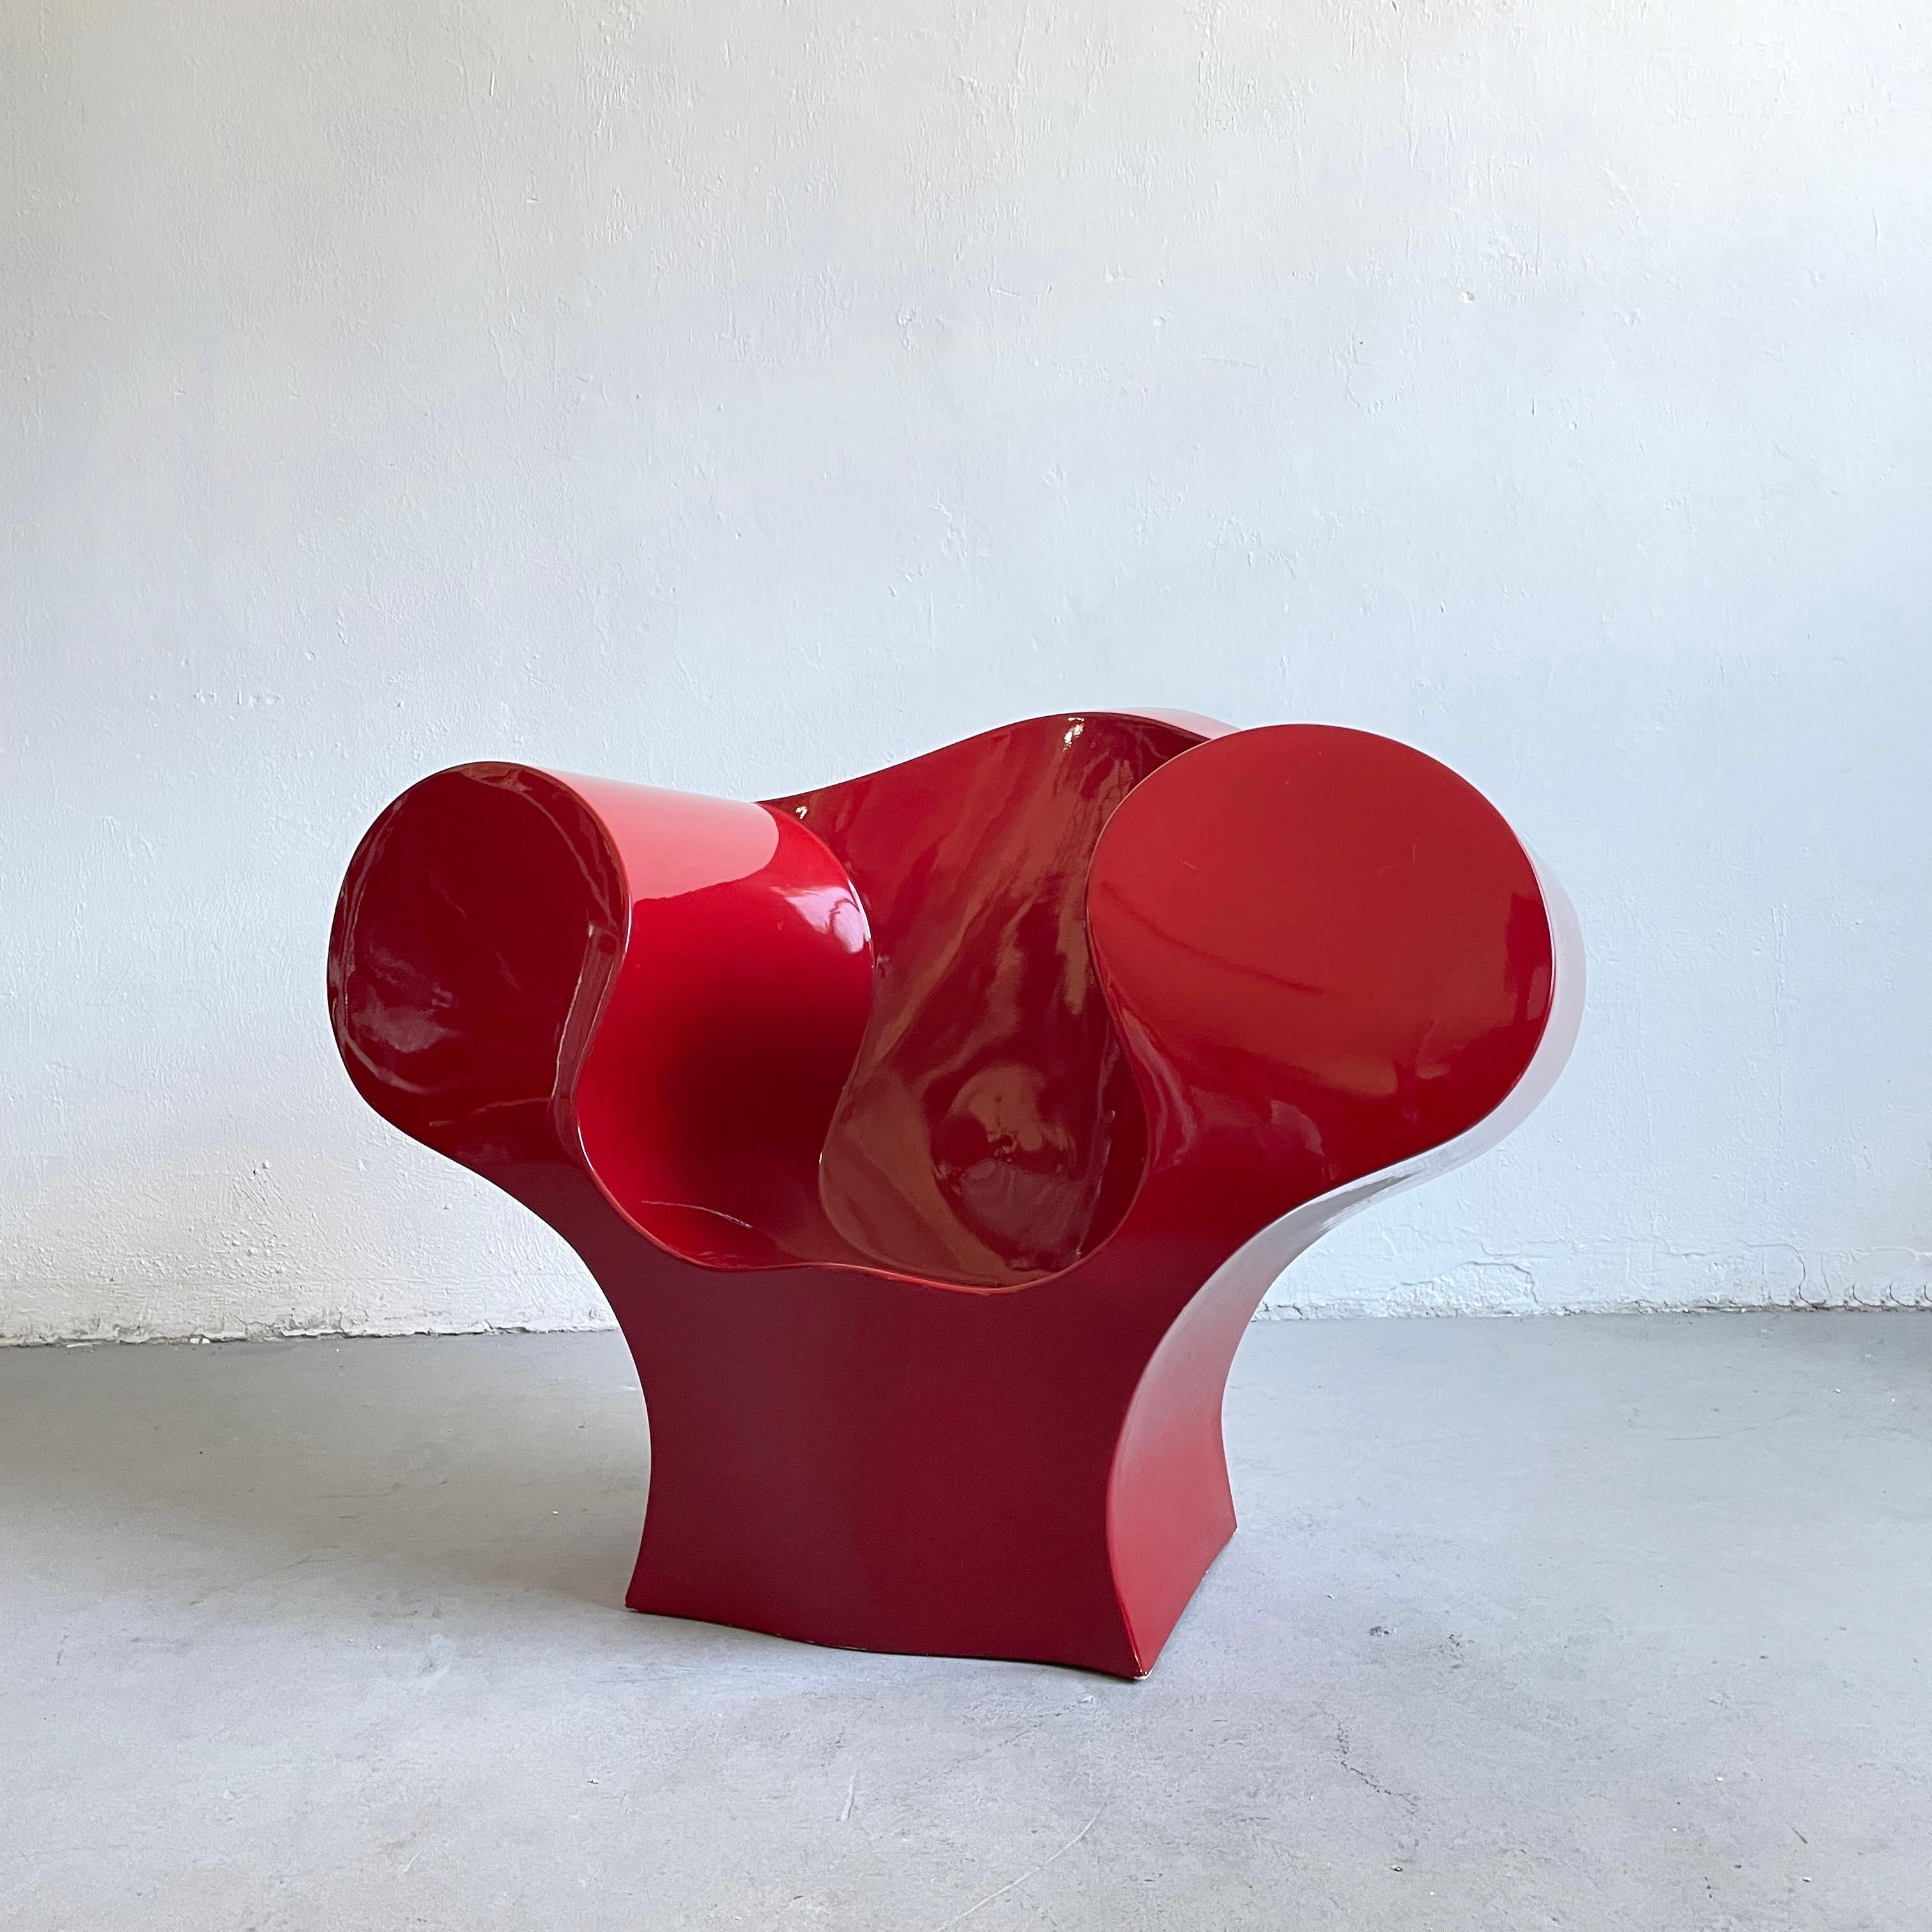 Fauteuil postmoderne iconique BIGLI (Big Easy) conçu par Ron Arad en 1991.

Il s'agit d'une version laquée produite par l'entreprise italienne Moroso au début des années 2000

La chaise est en bon état et présente quelques légères rayures et de